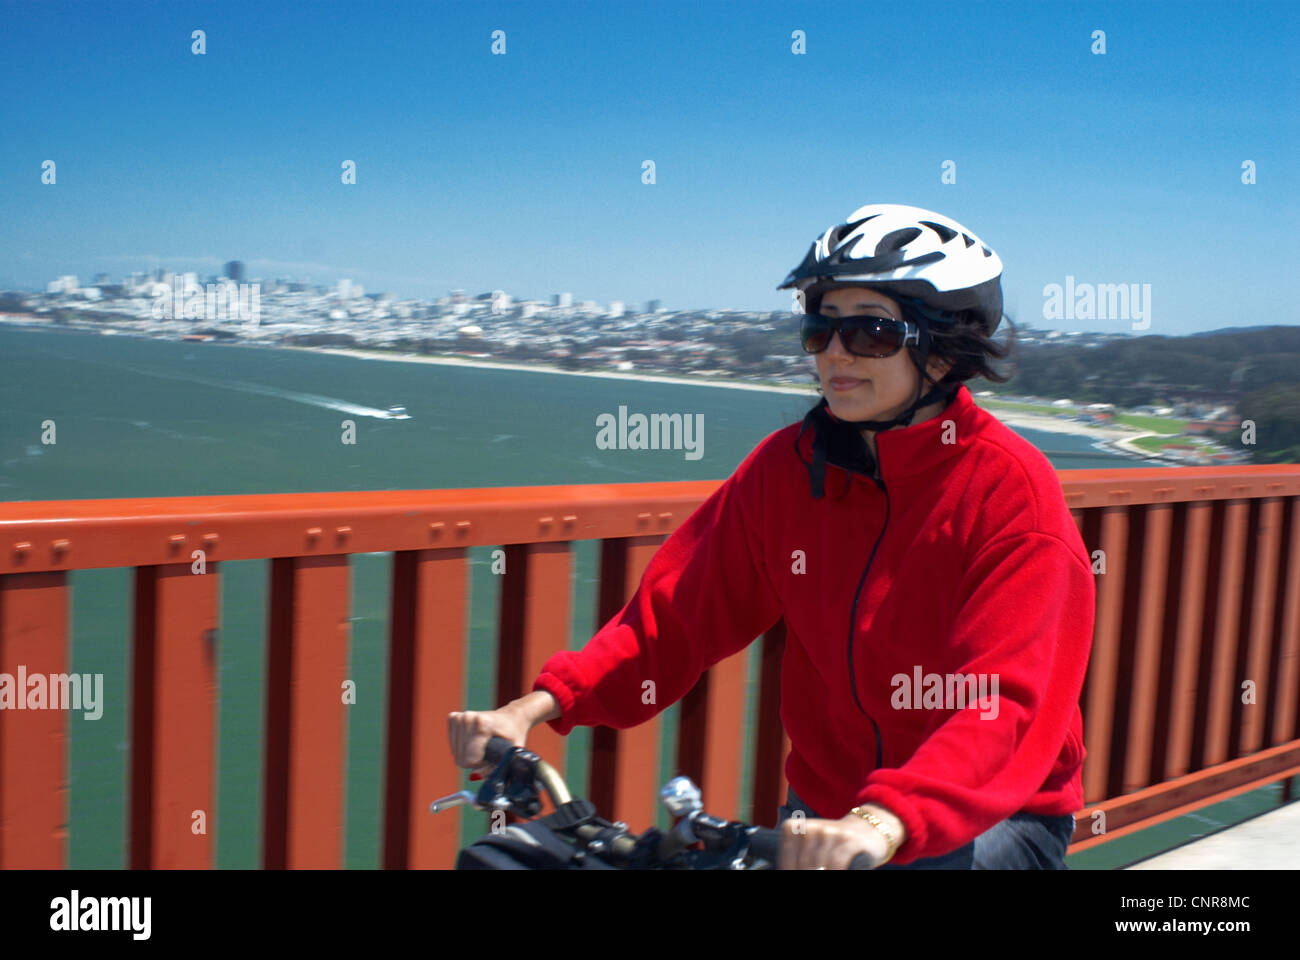 Frau Reiten Fahrrad auf städtische Brücke Stockfoto